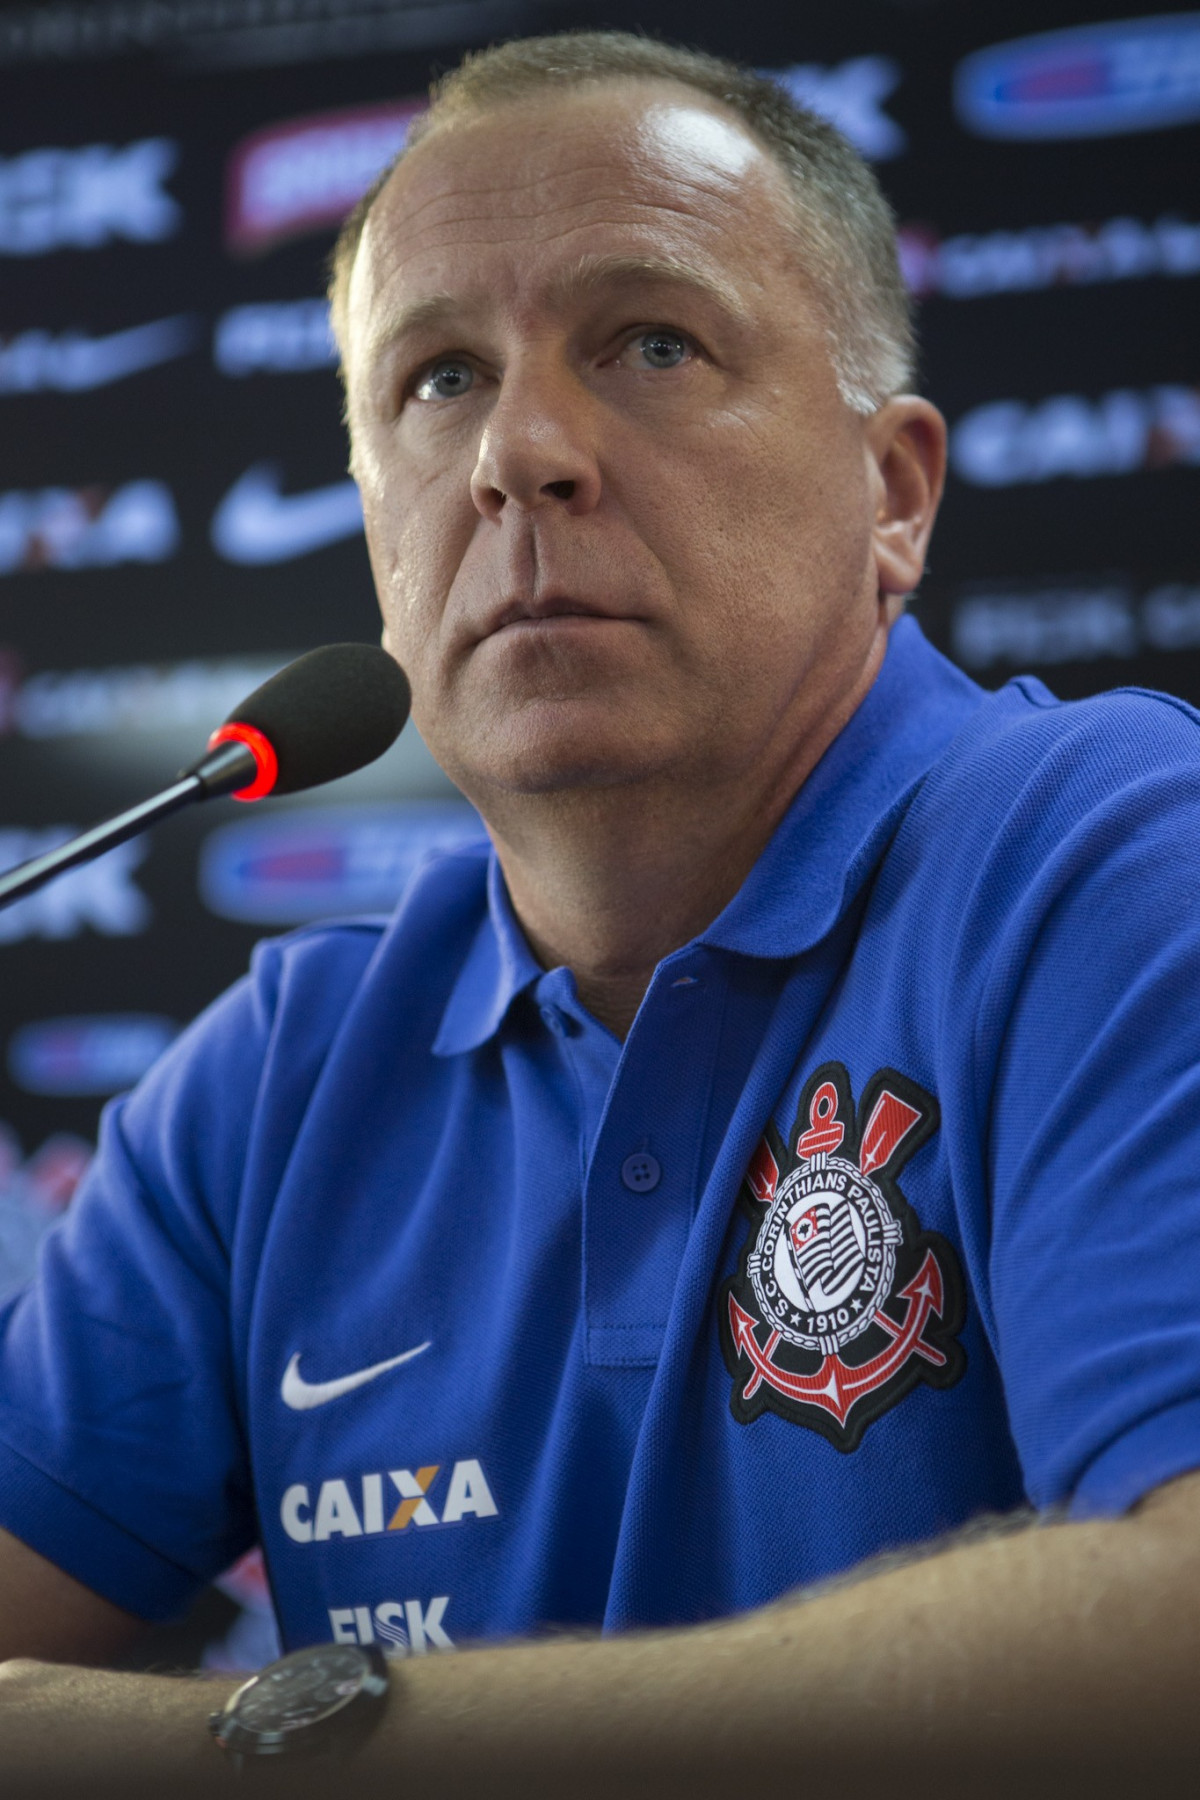 O tcnico Mano Menezes e apresentado a imprensa na reapresentacao do time do Corinthians para o ano de 2014